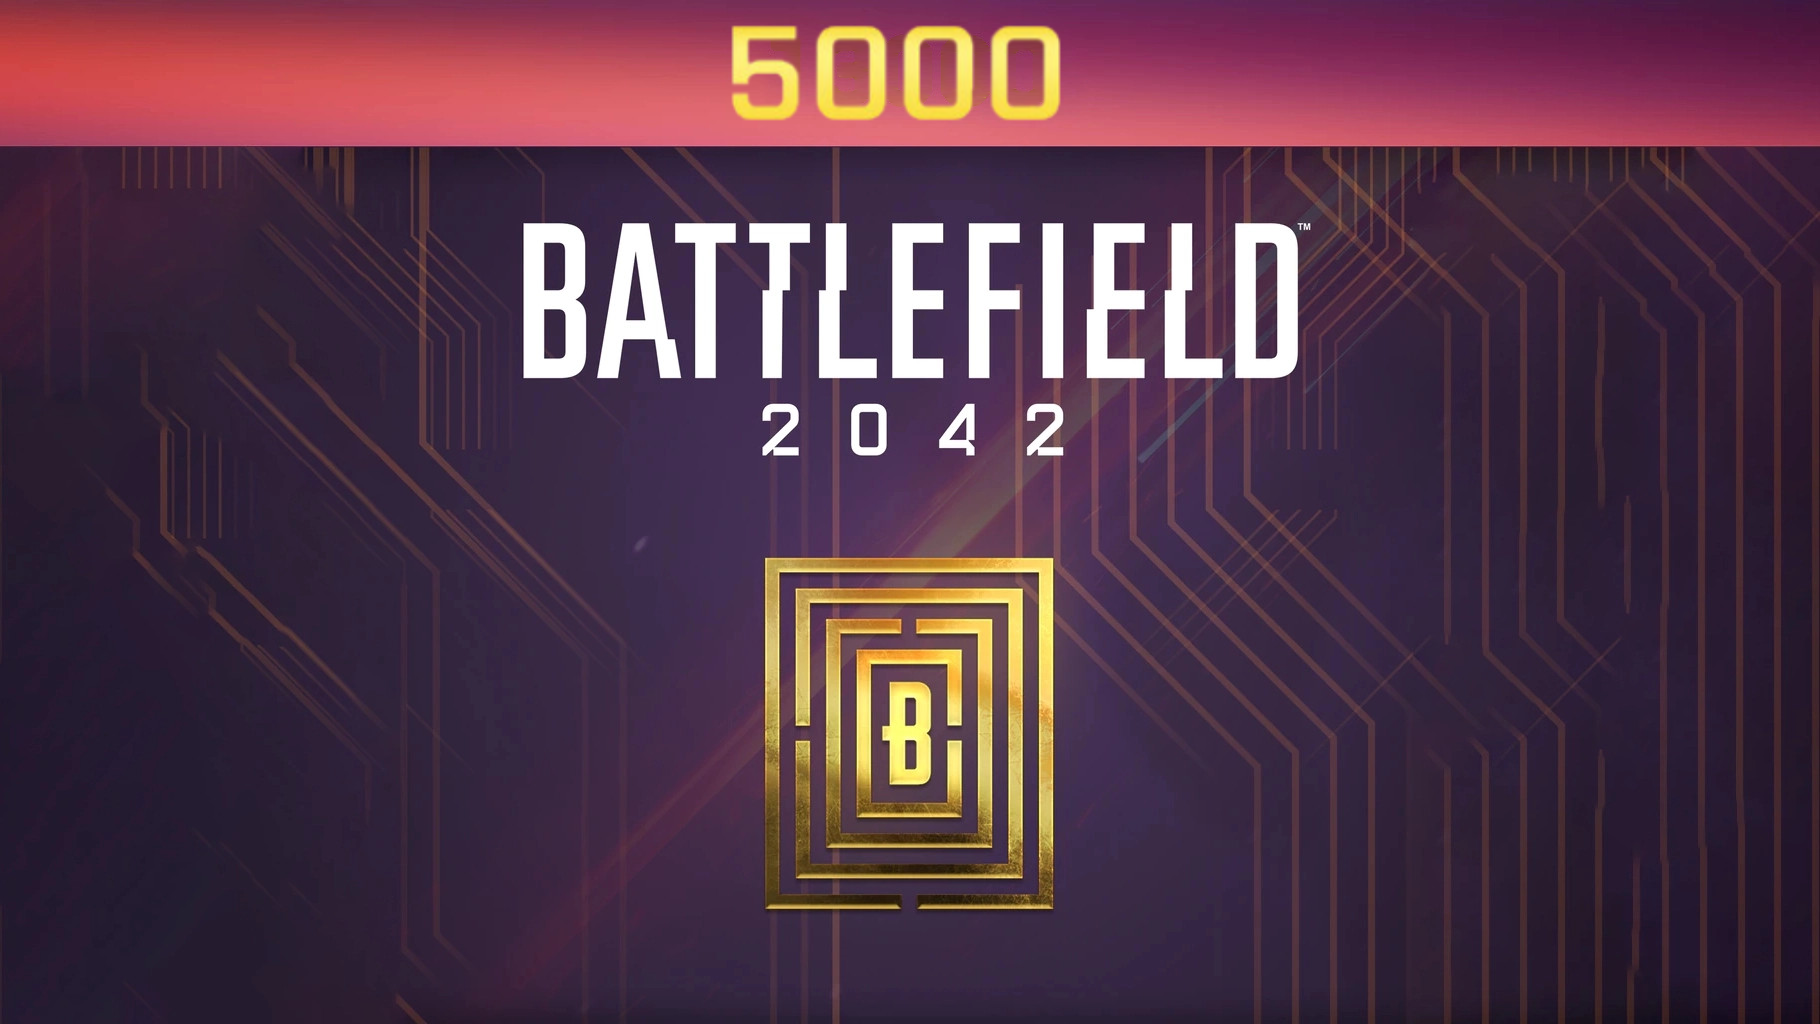 Battlefield 2042 - 5000 BFC Balance XBOX One / Xbox Series X|S CD Key, $40.67